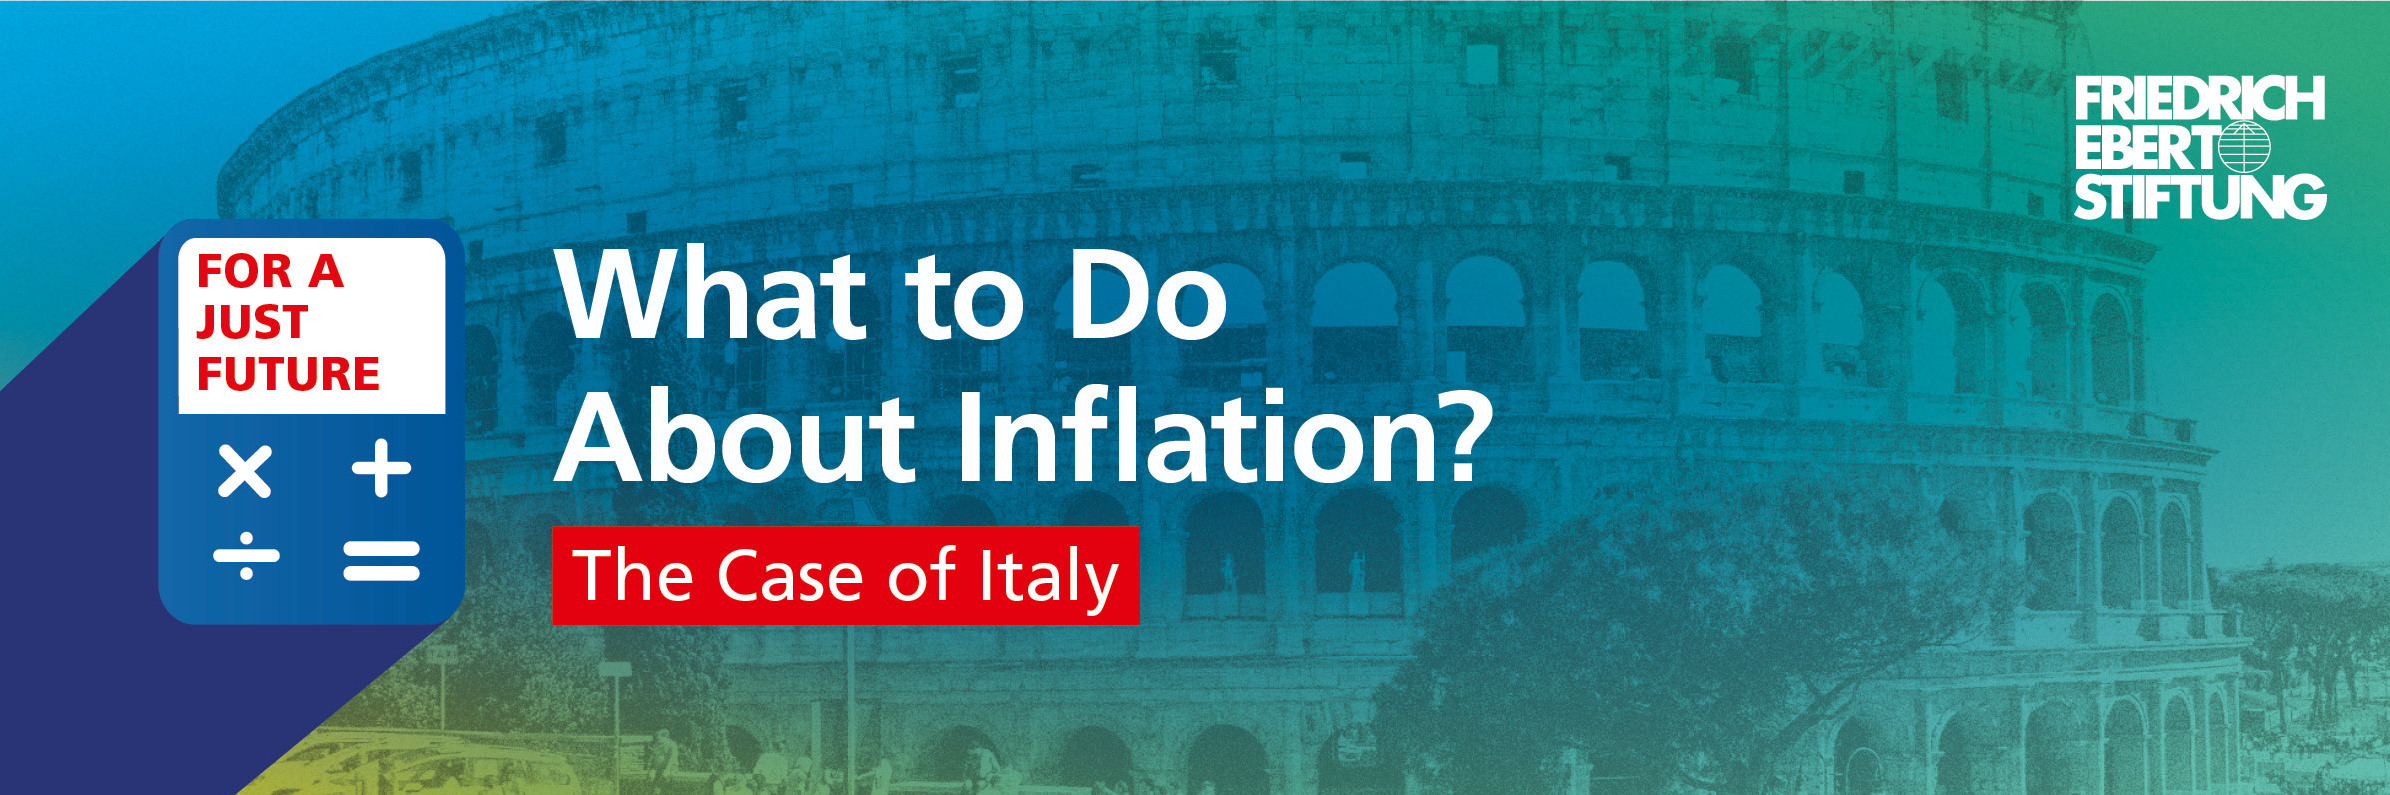 Blau-grün-gelb verwischter Hintergrund. Darauf der weiße Schriftzug "Was tun gegen die Inflation? Das Beispiel Italien".